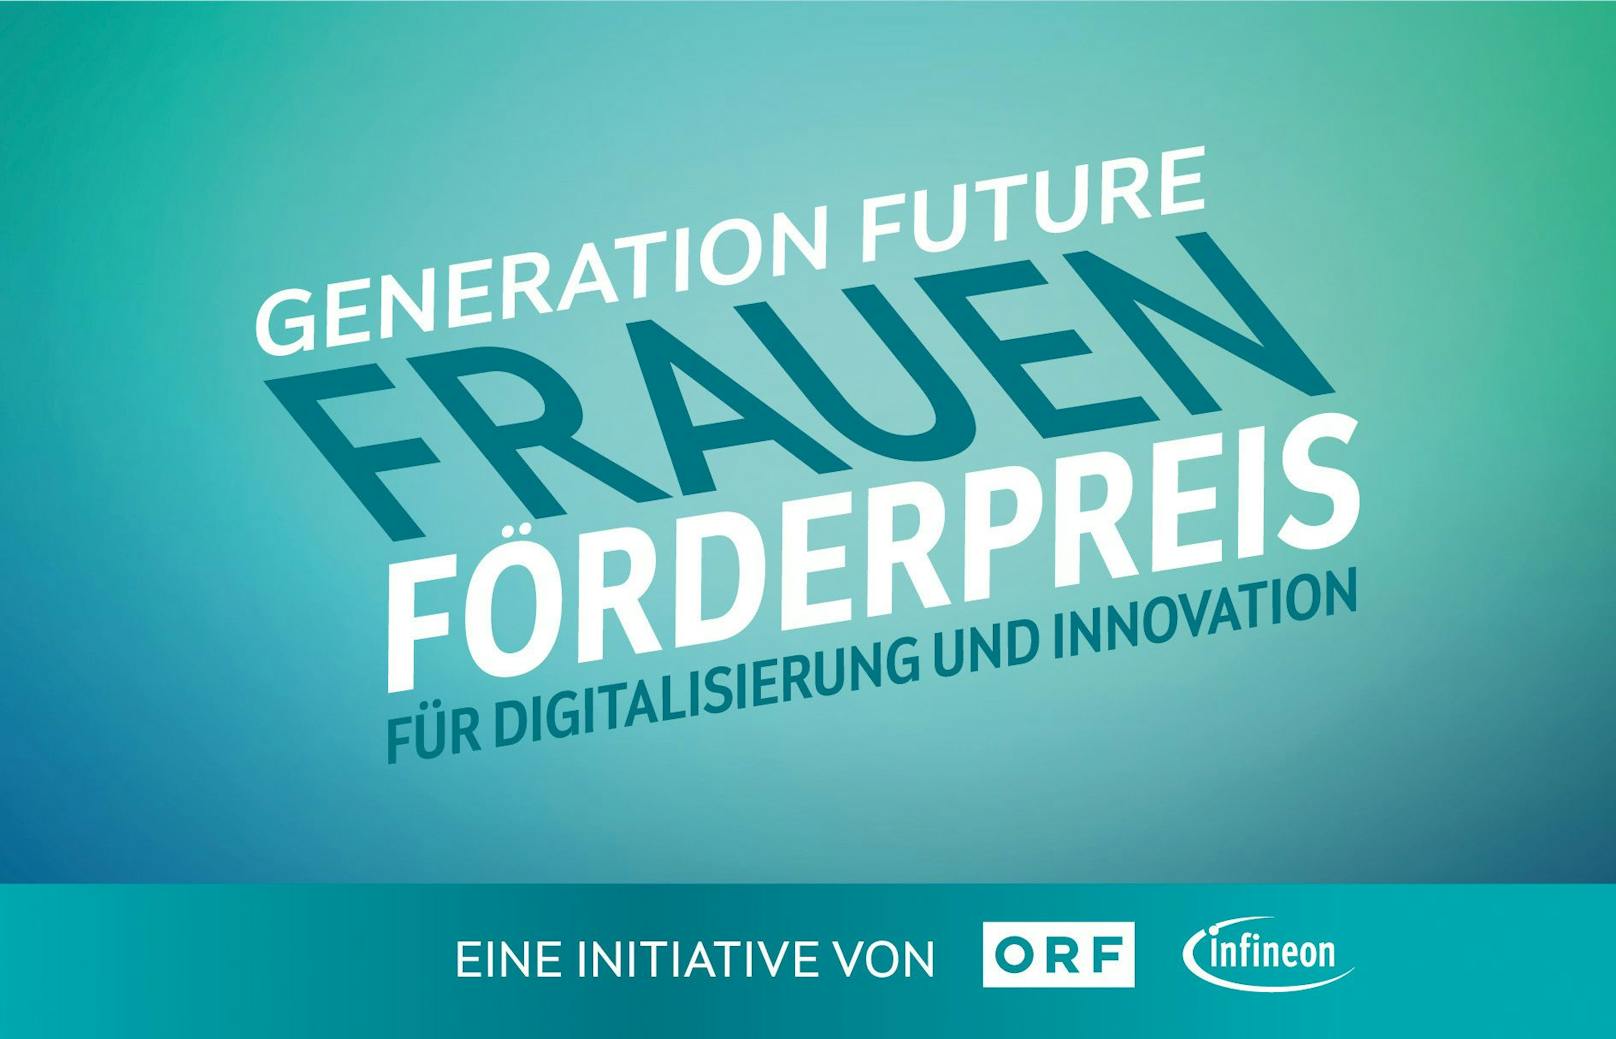 Infineon Austria und ORF schreiben den "Frauen-Förderpreis für Digitalisierung und Innovation" aus.